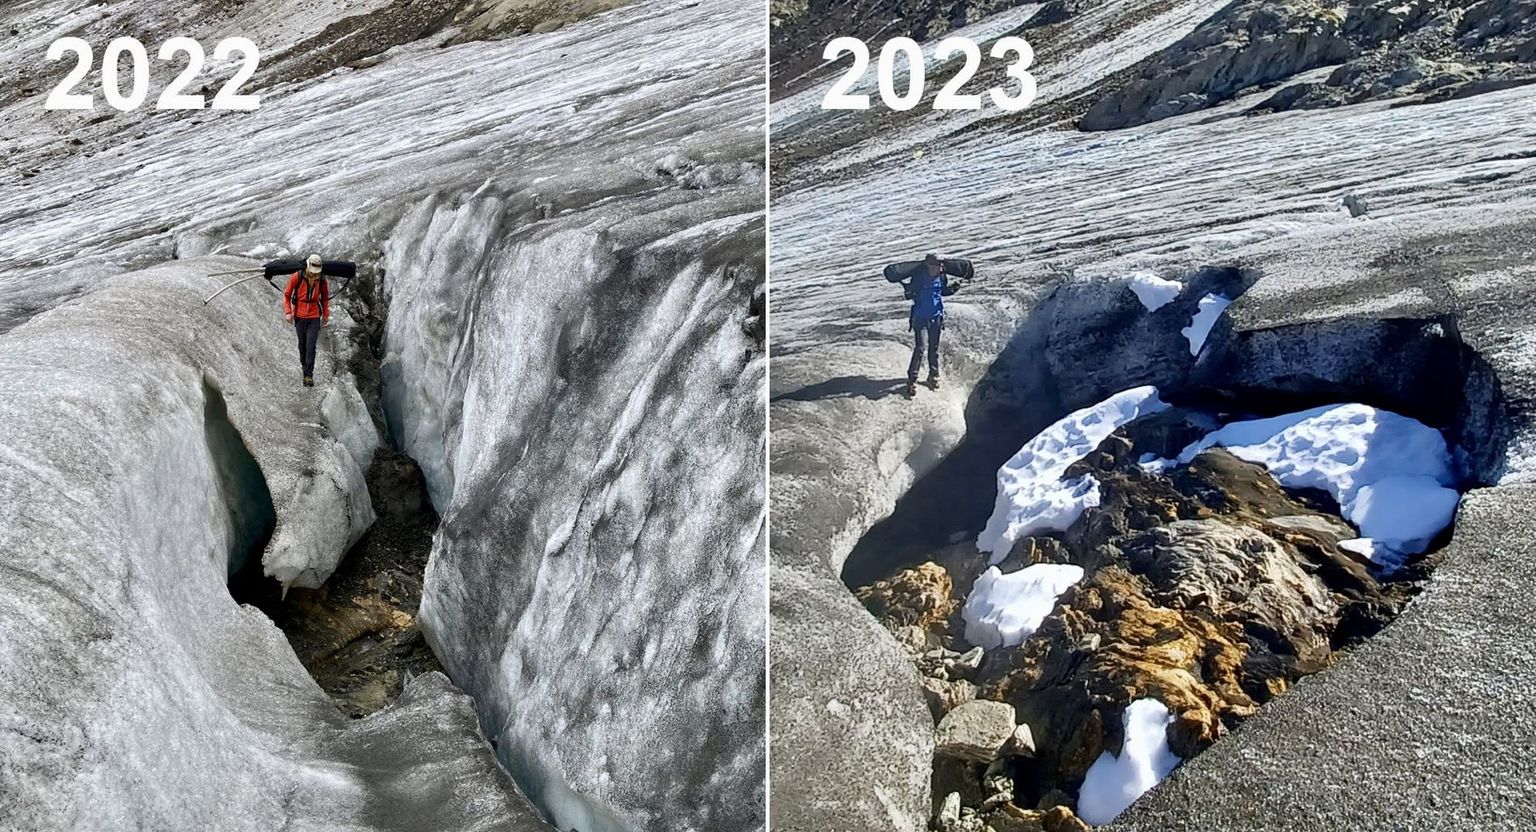 Le glacier de Gries (VS) fond de plus en plus rapidement: l’année dernière, on avait découvert de la roche au fond d’une crevasse au milieu du glacier. Depuis, un véritable îlot rocheux s’est formé.